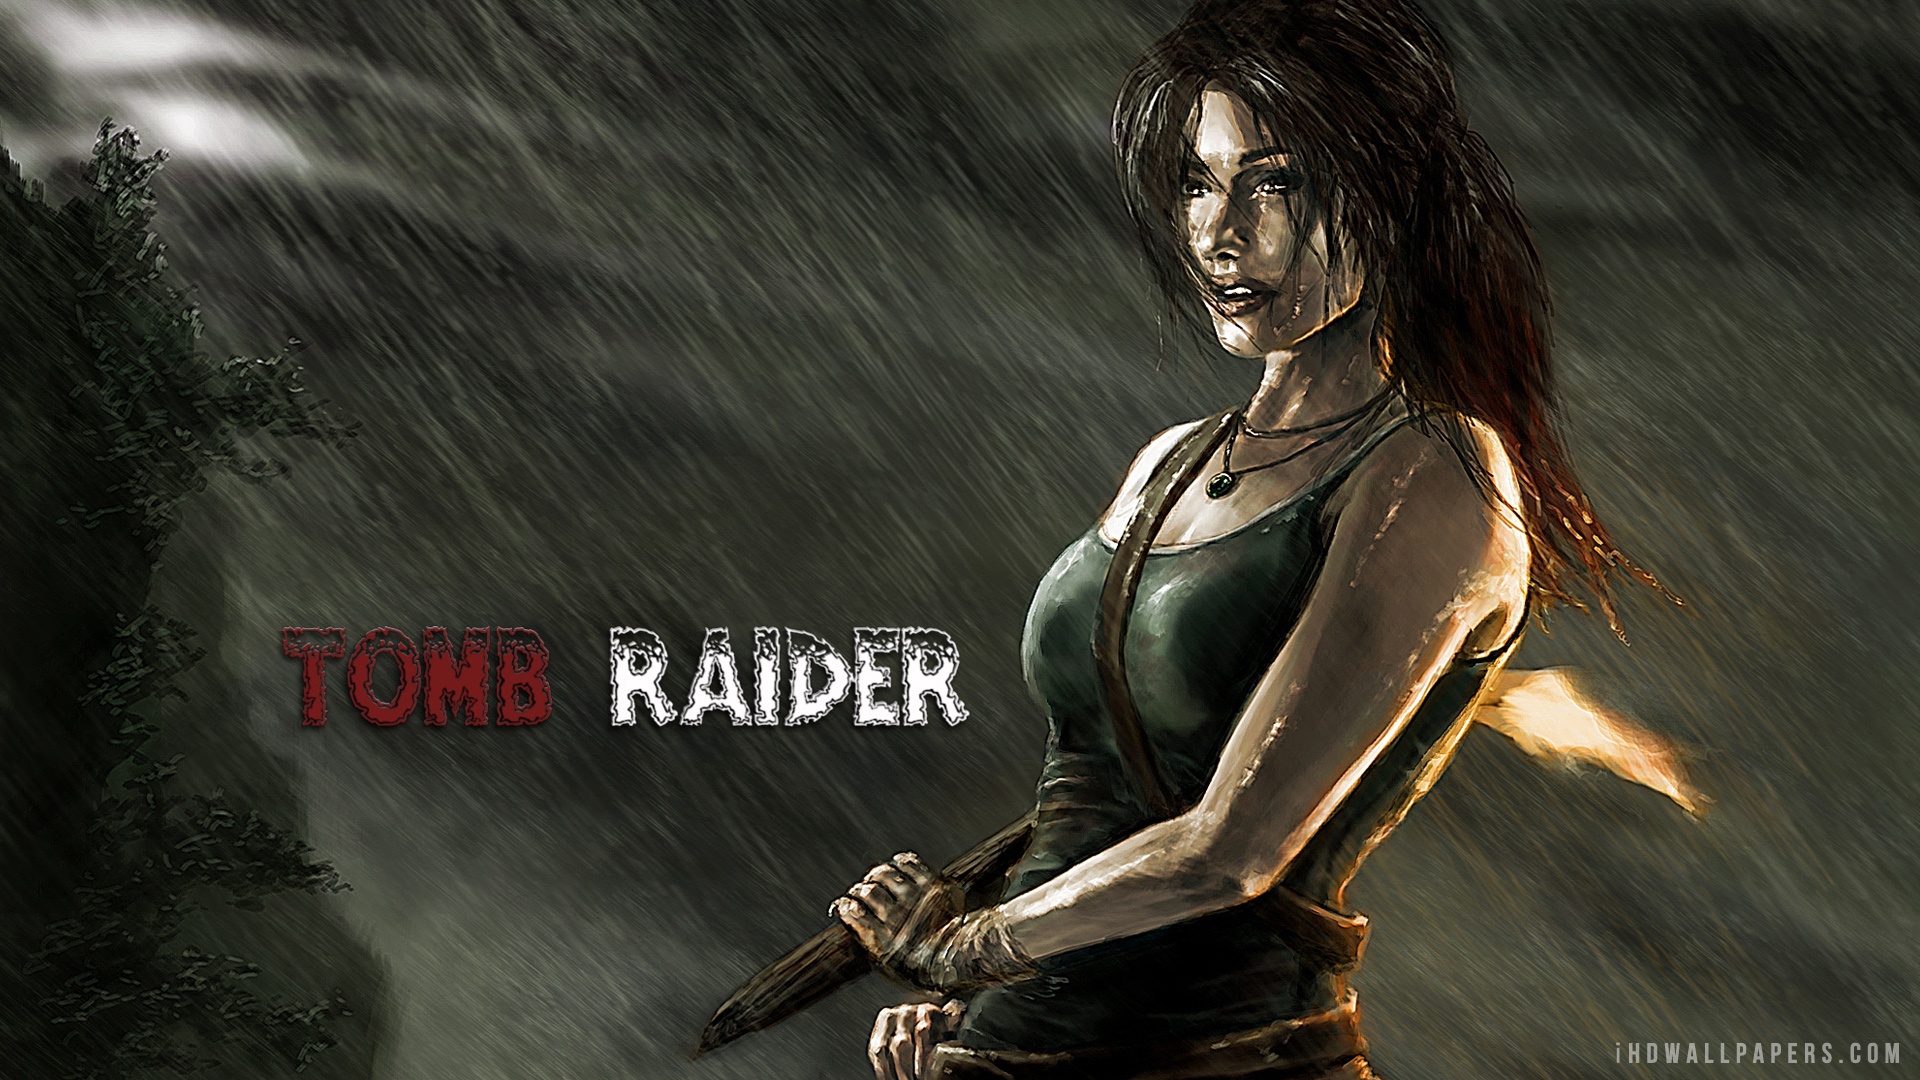 2012 Tomb Raider HD Wallpaper   iHD Wallpapers 1920x1080